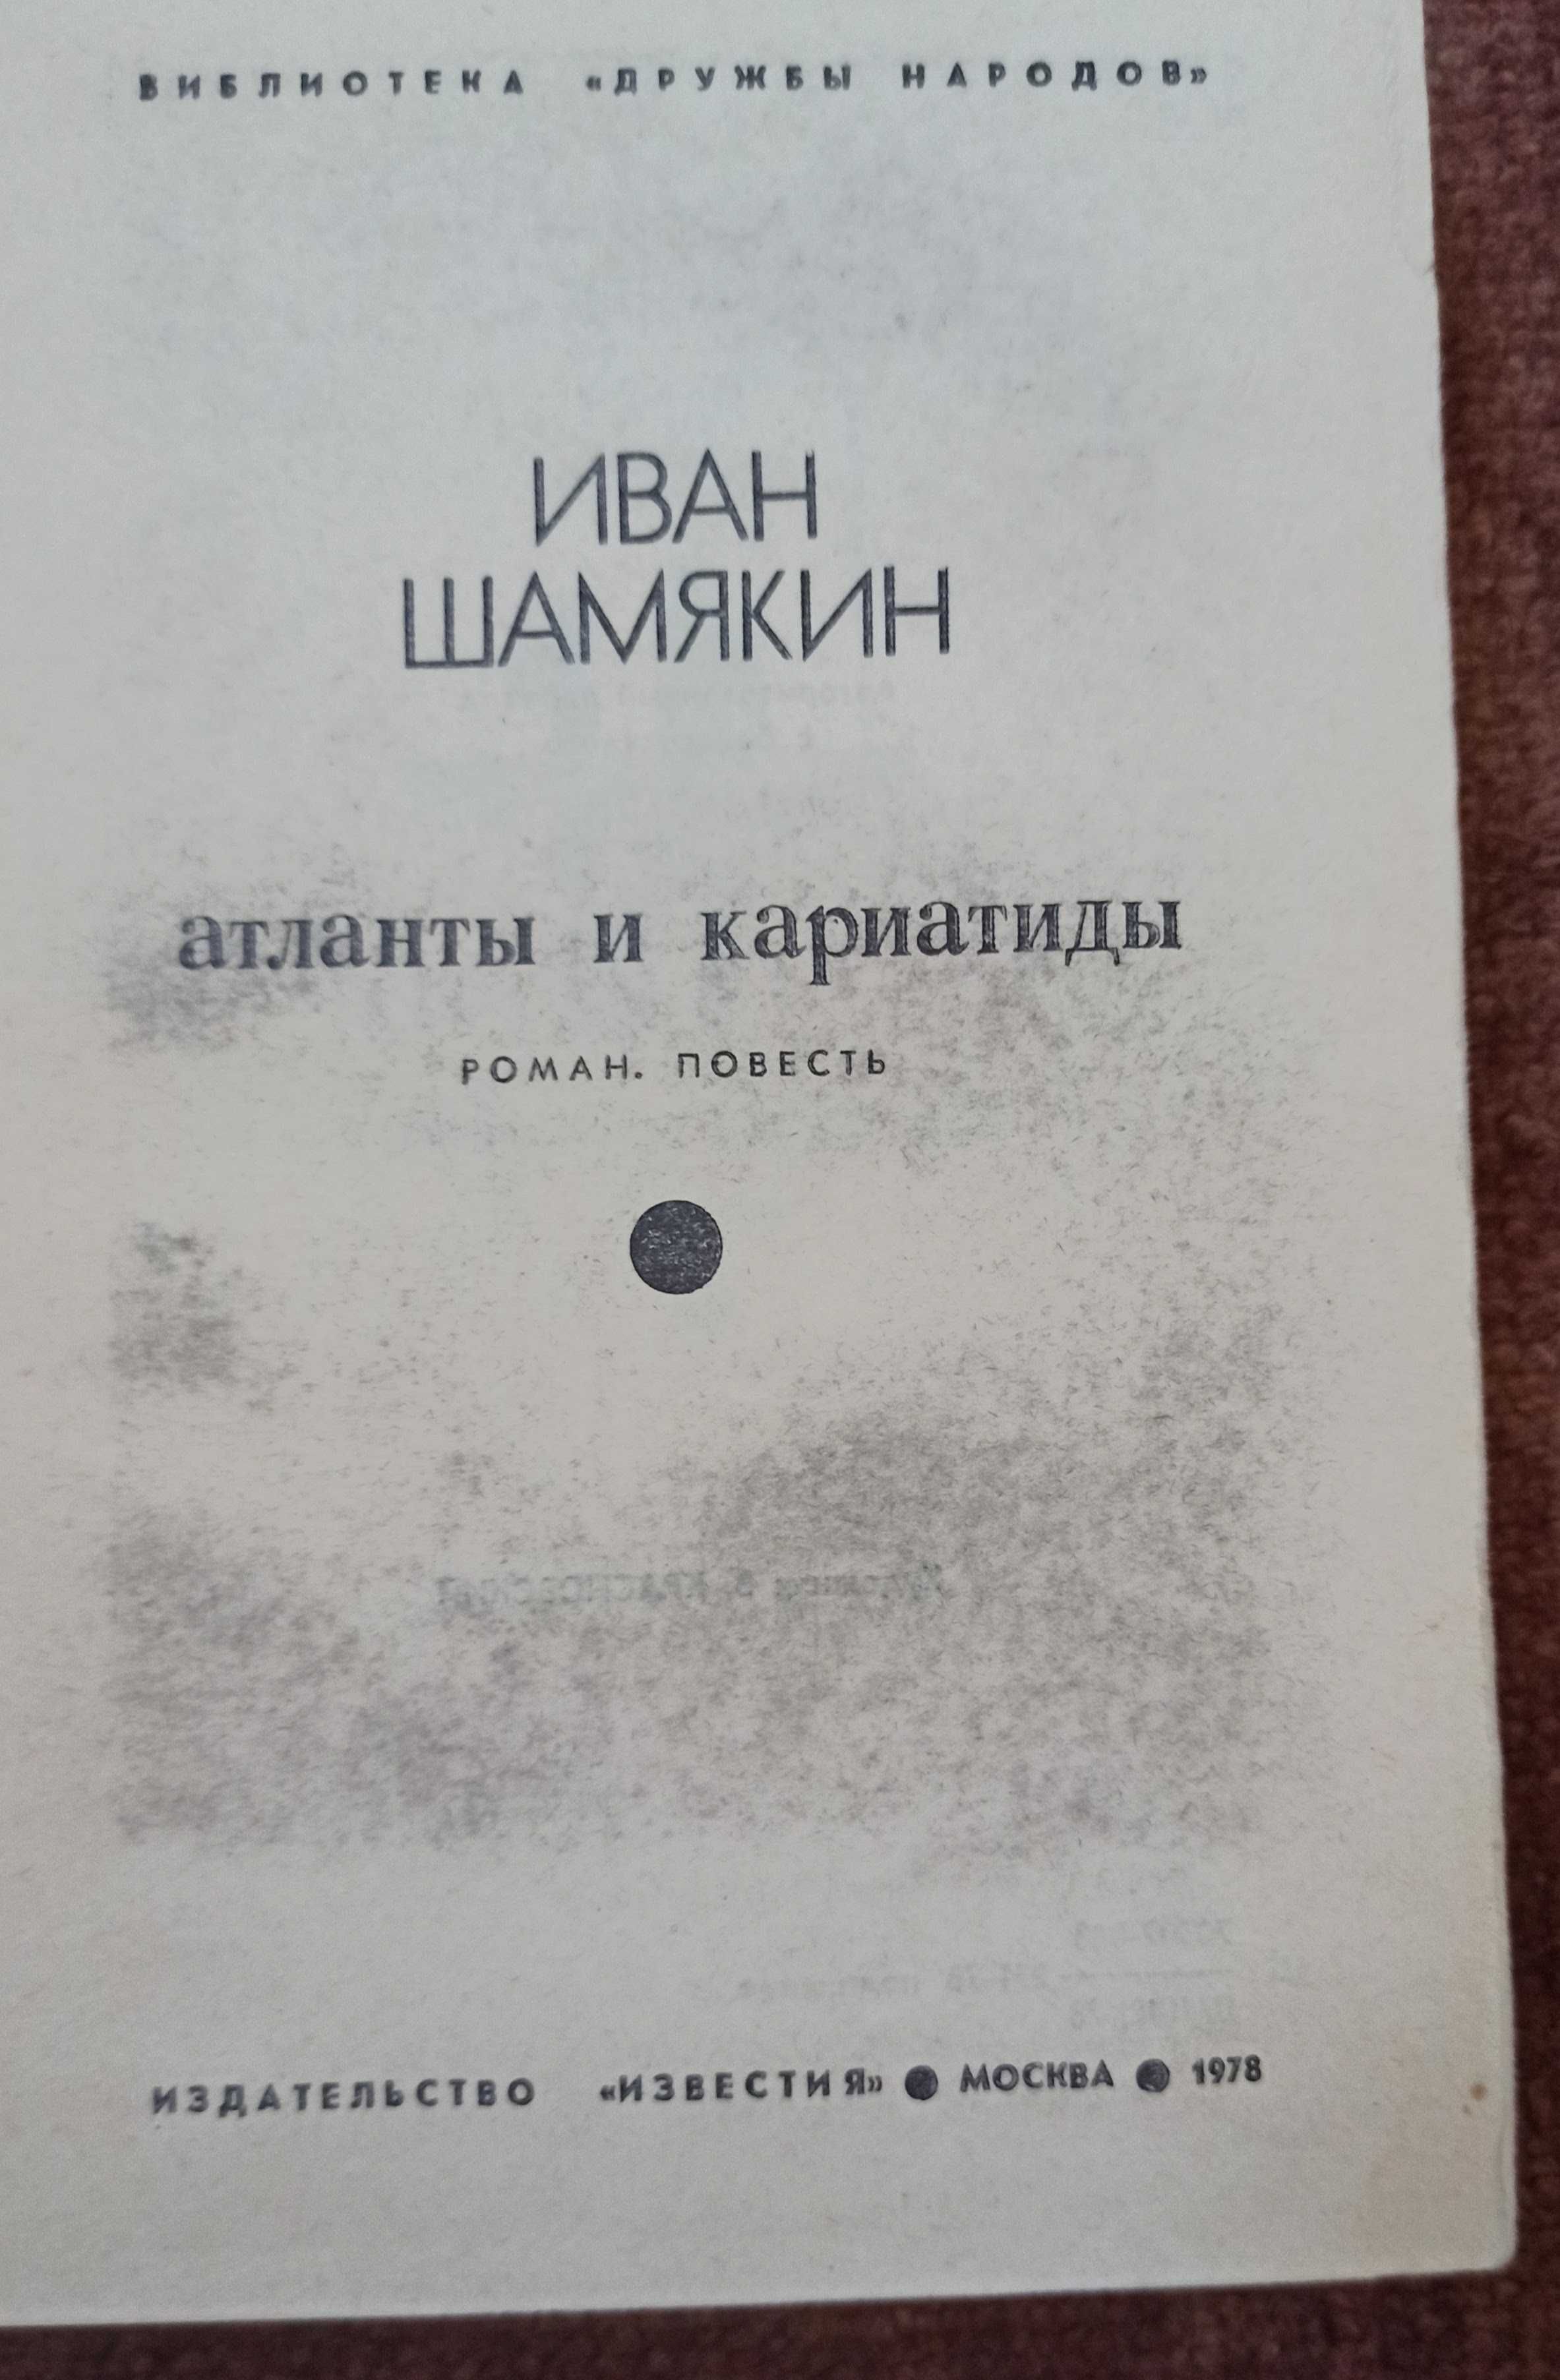 Книга Иван Шамякин "Атланты и Кариатиды"